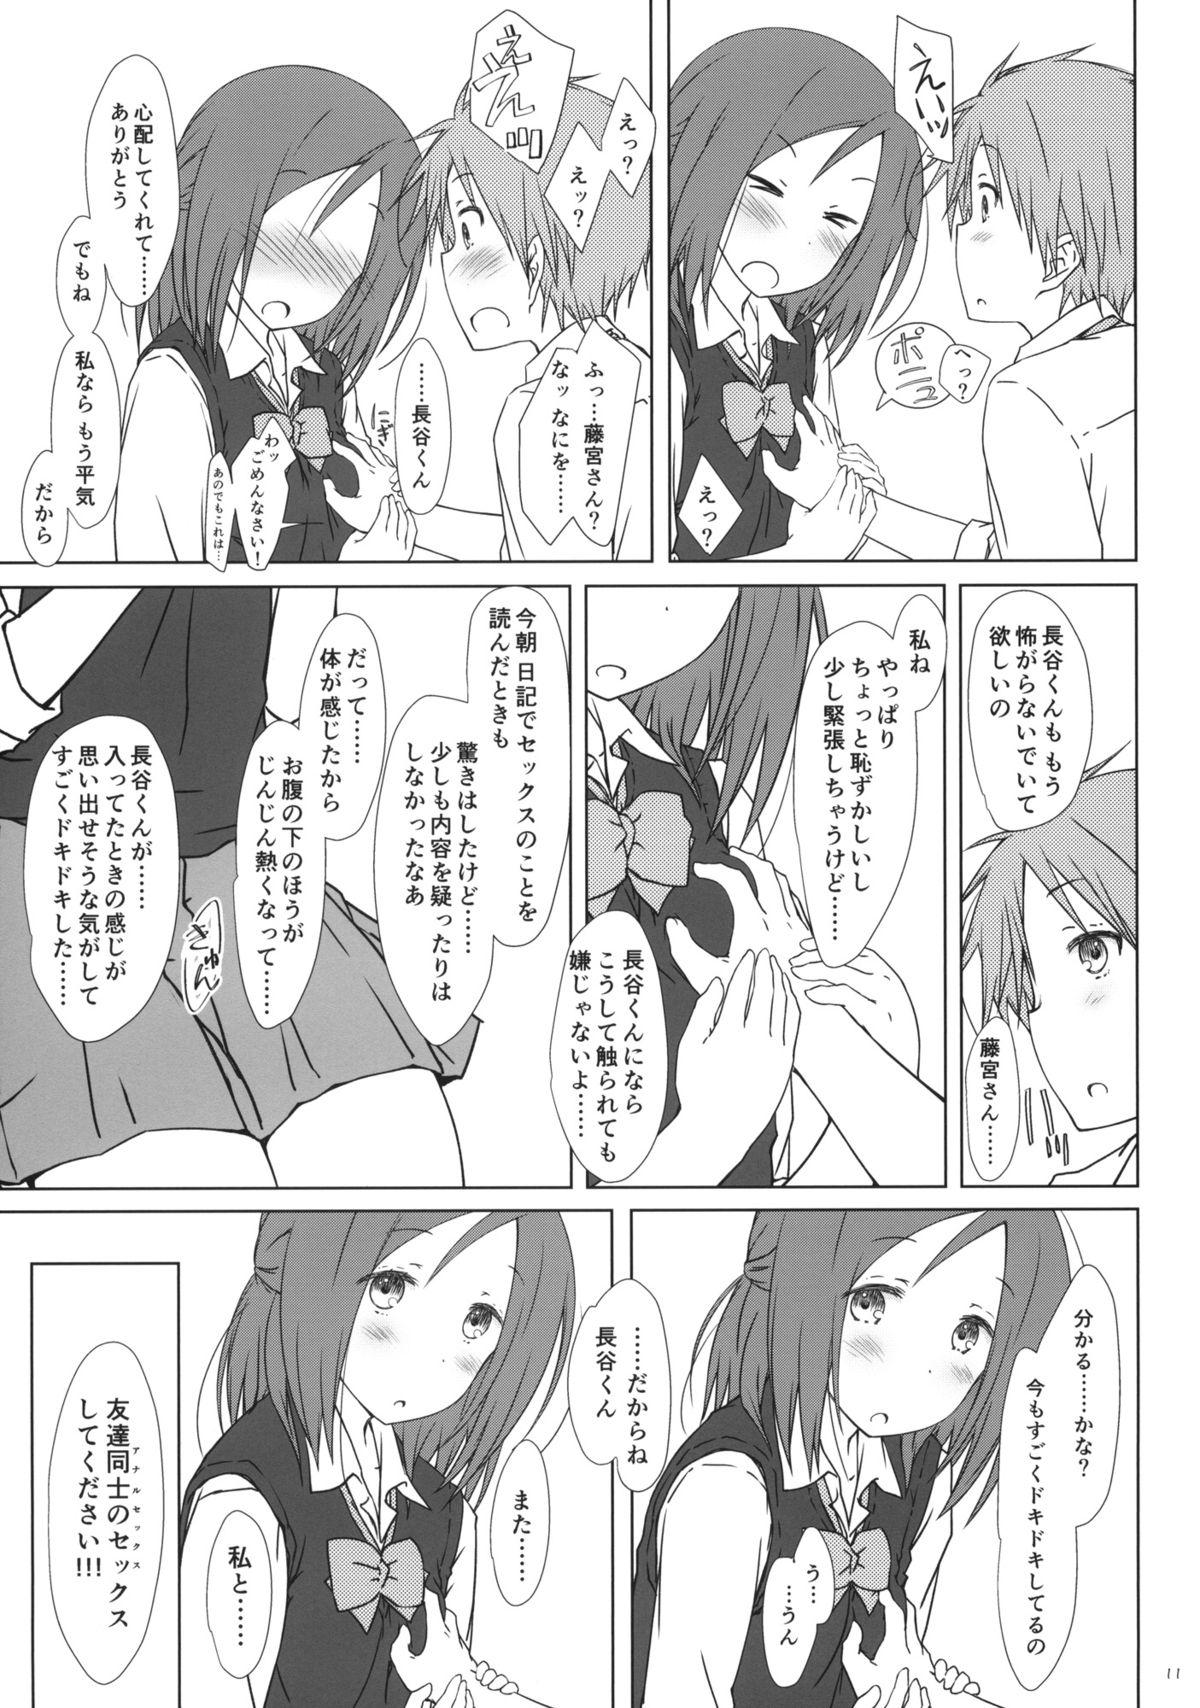 Hunks "Tomodachi to no Sex no Tsuzuki no sorekara." + Paper - One week friends Fisting - Page 10